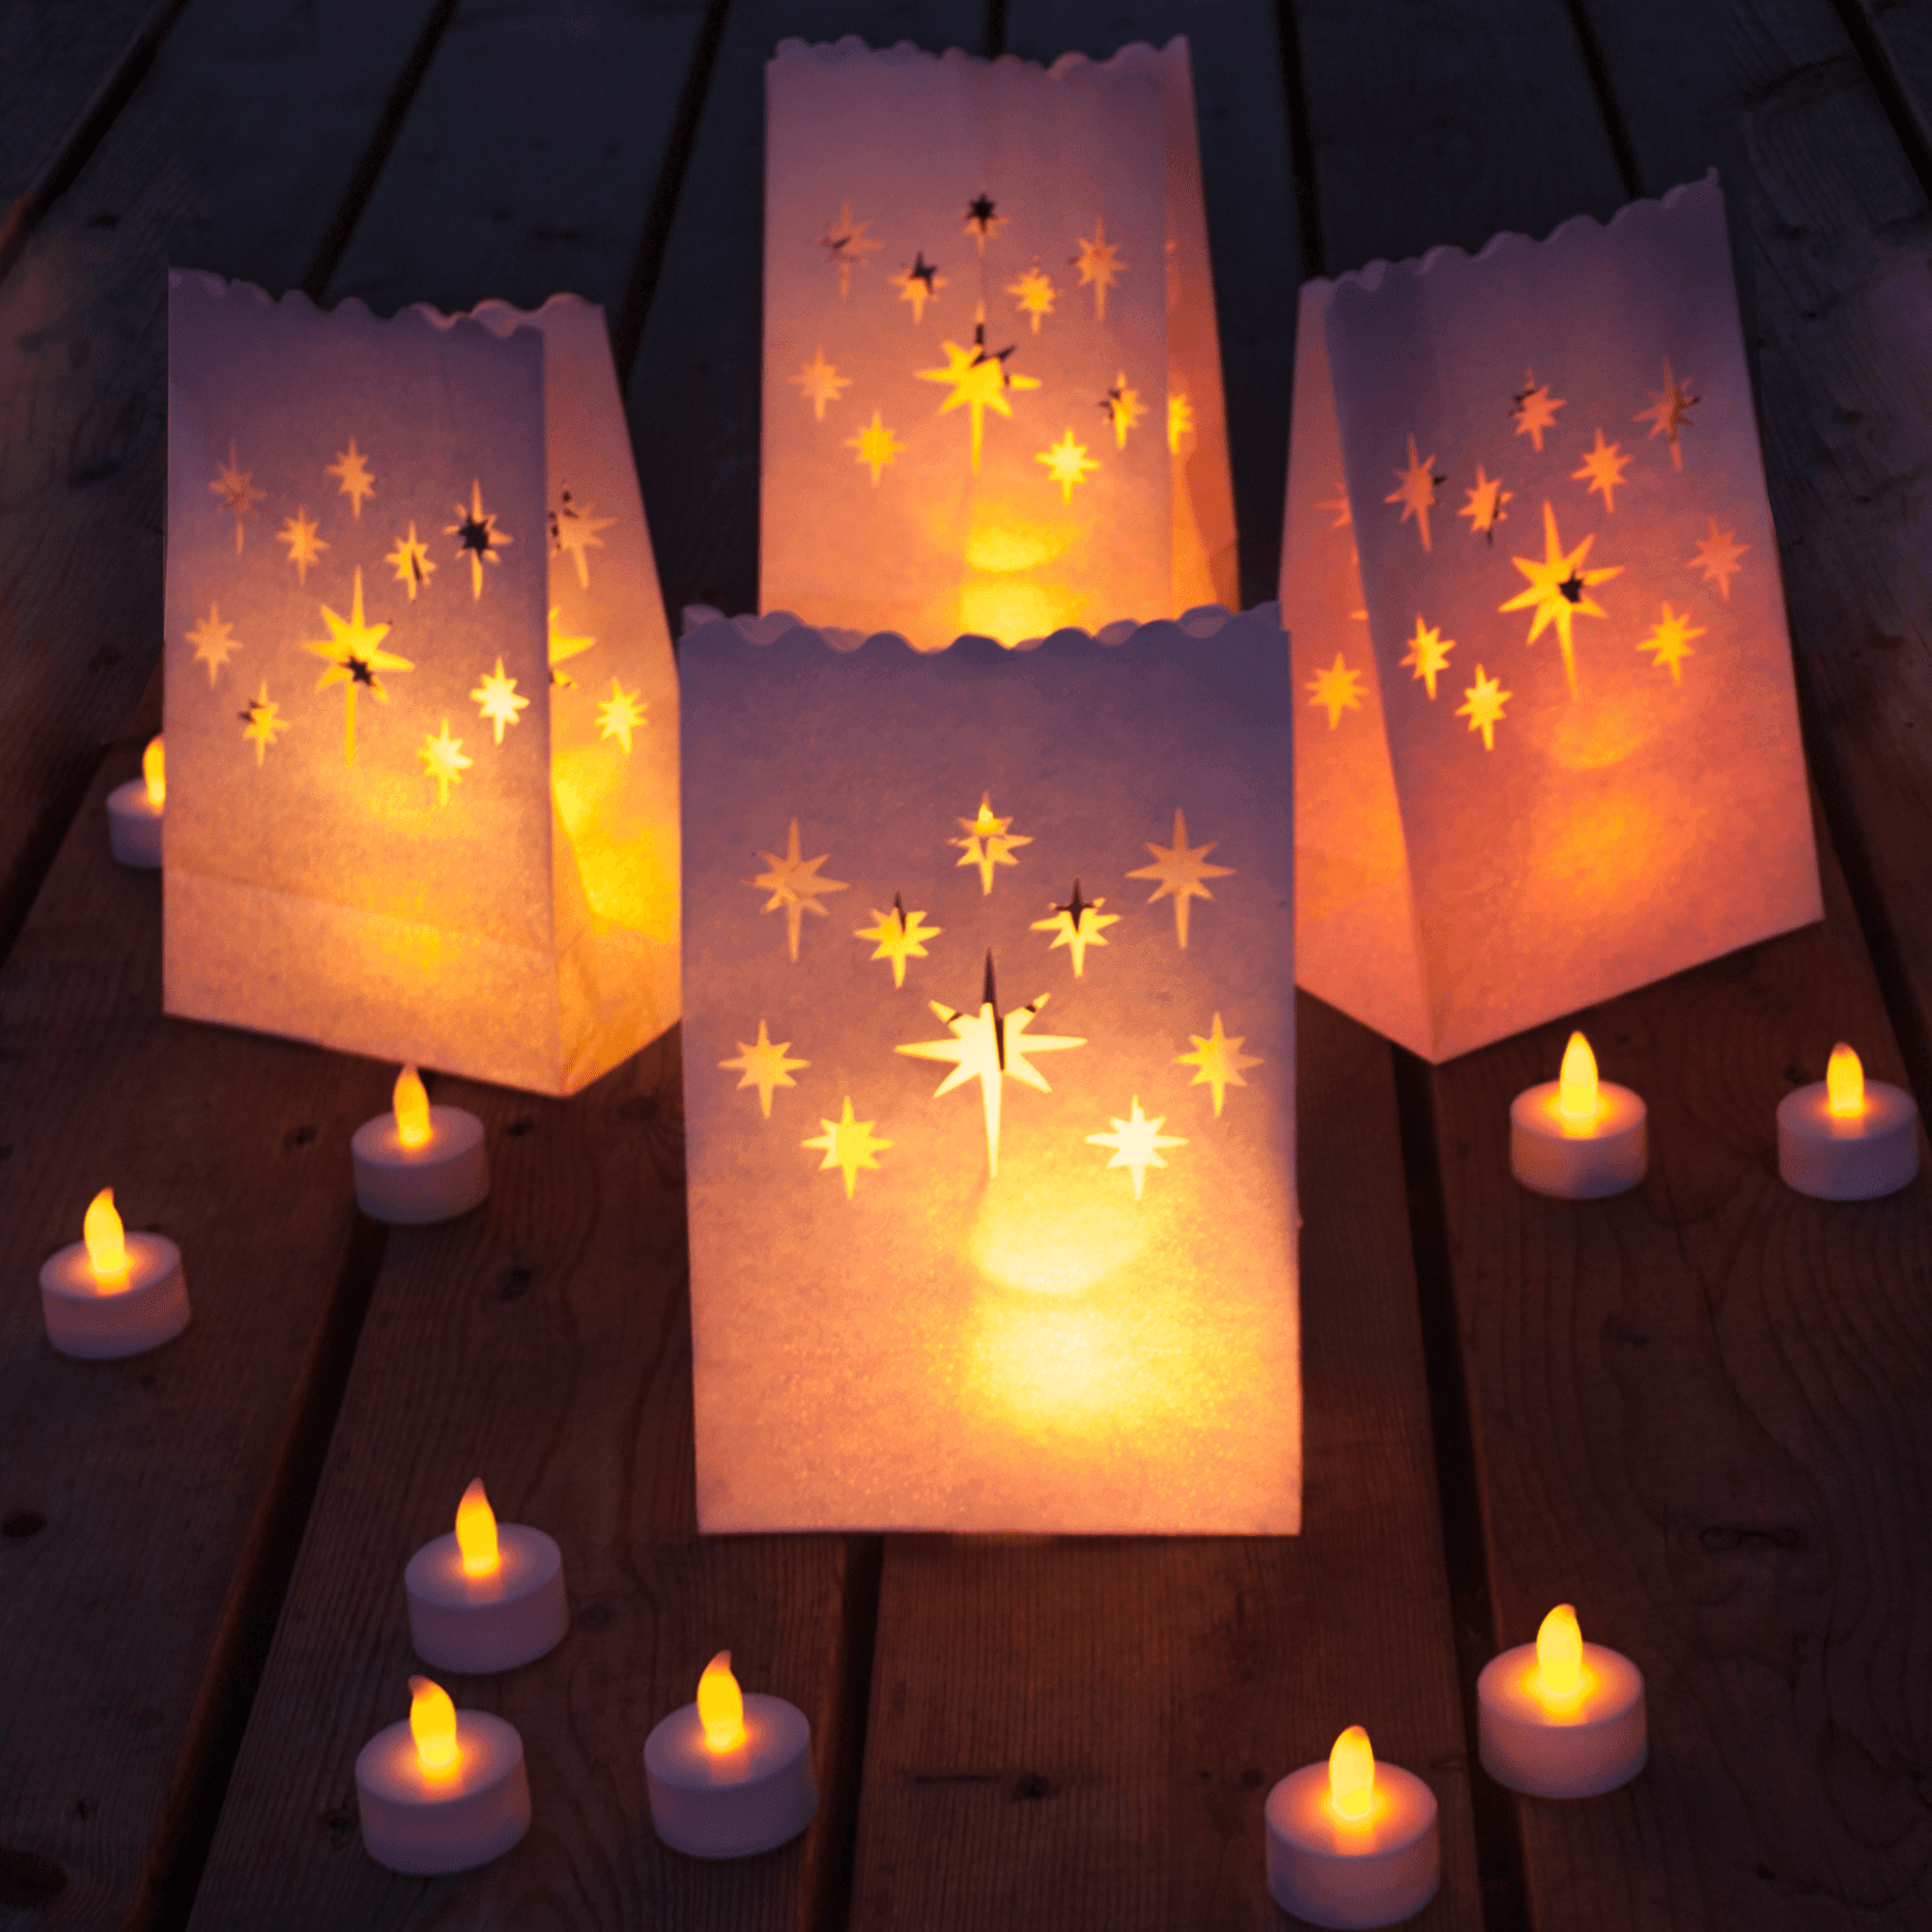 Luminary свечи. Бумажный фонарик со свечкой. Фонарики из Рапунцель. Бумажный фонарик со свечкой своими руками. Фонарики бумажные со свечкой внутри.